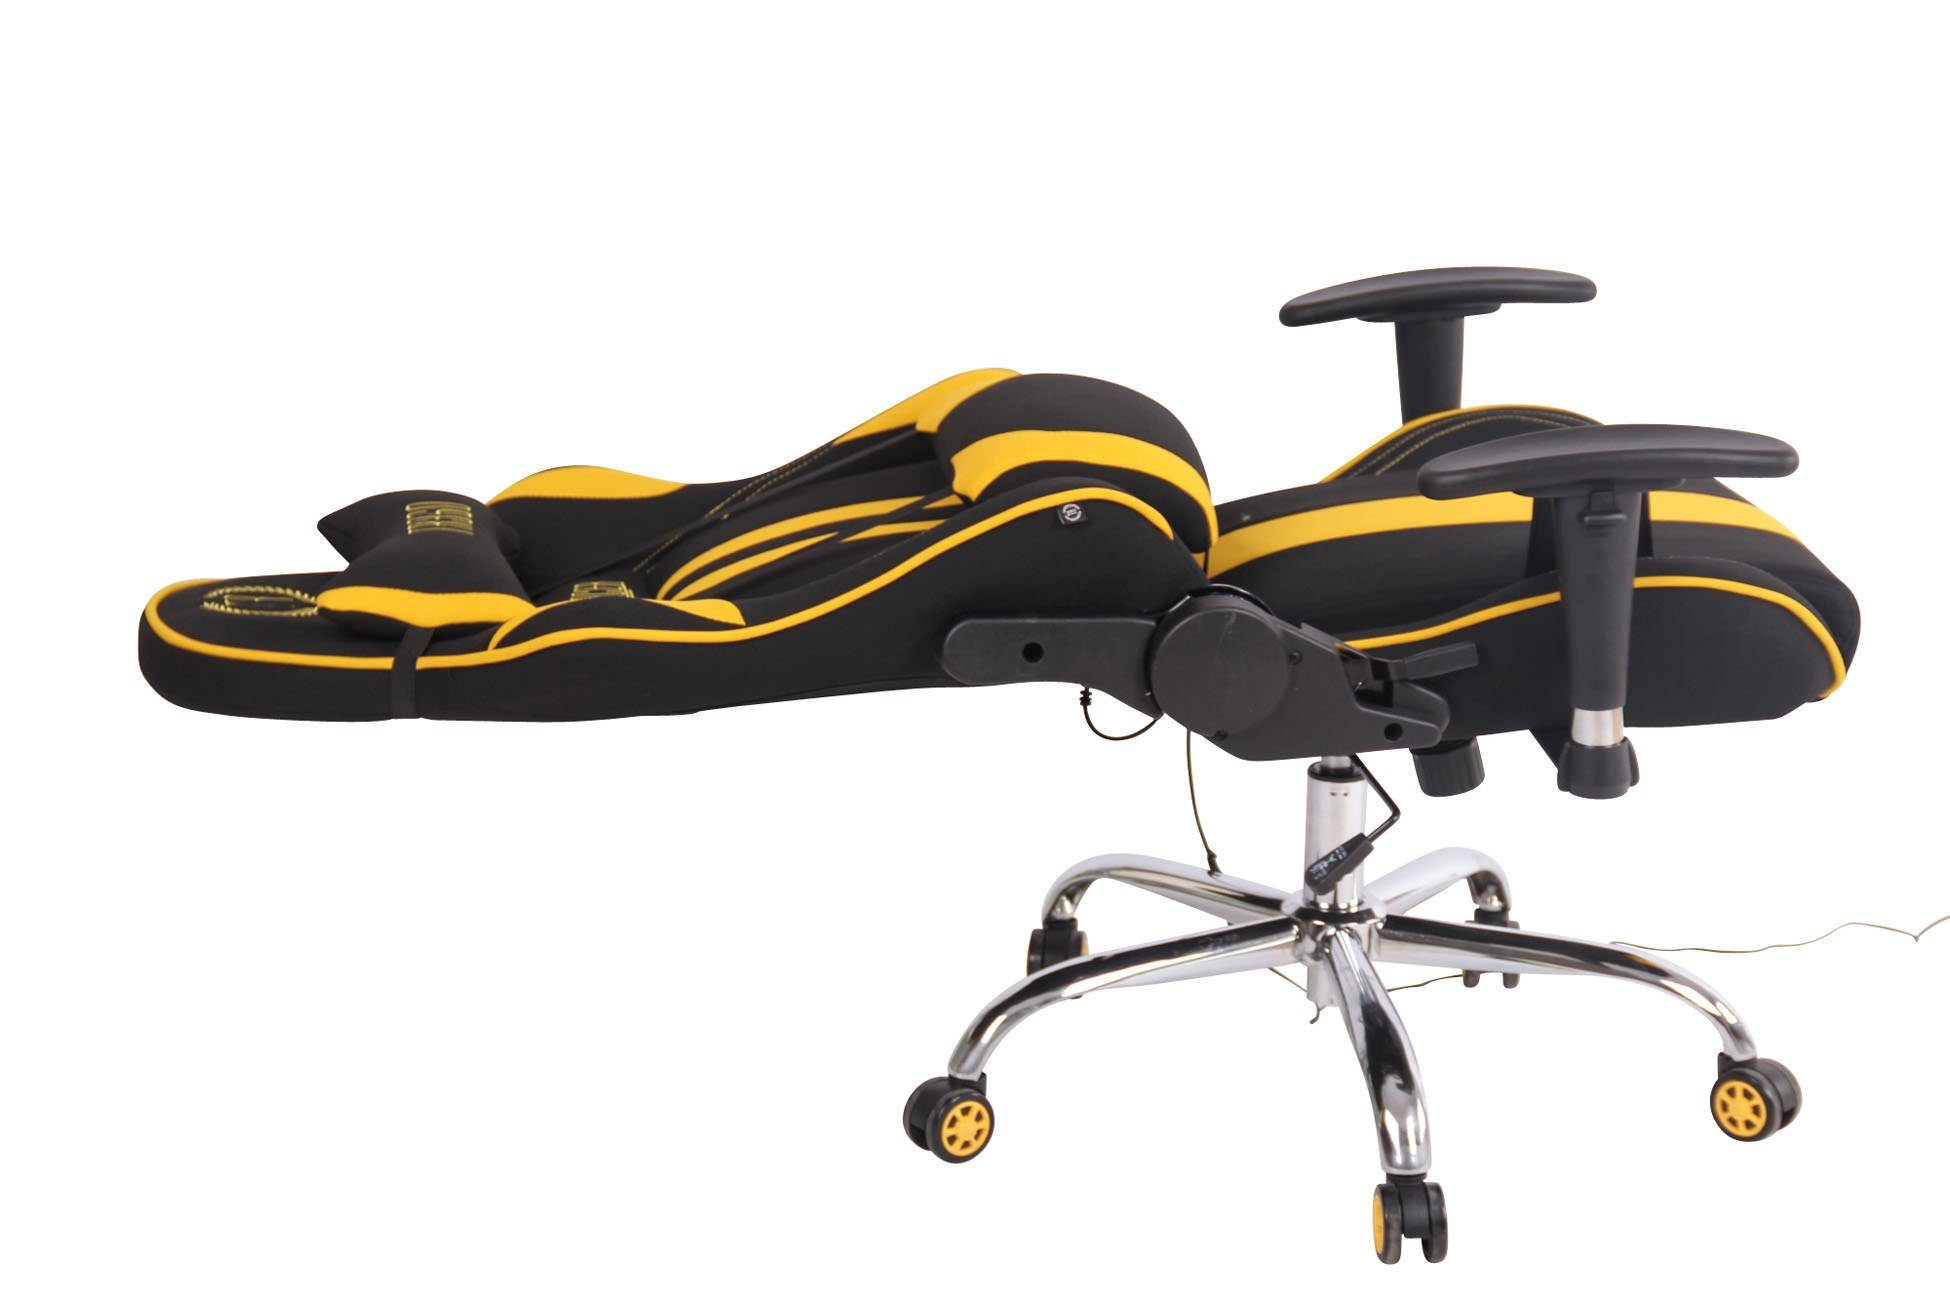 Gaming schwarz/gelb Massagefunktion Limit CLP Chair Stoff, mit XM